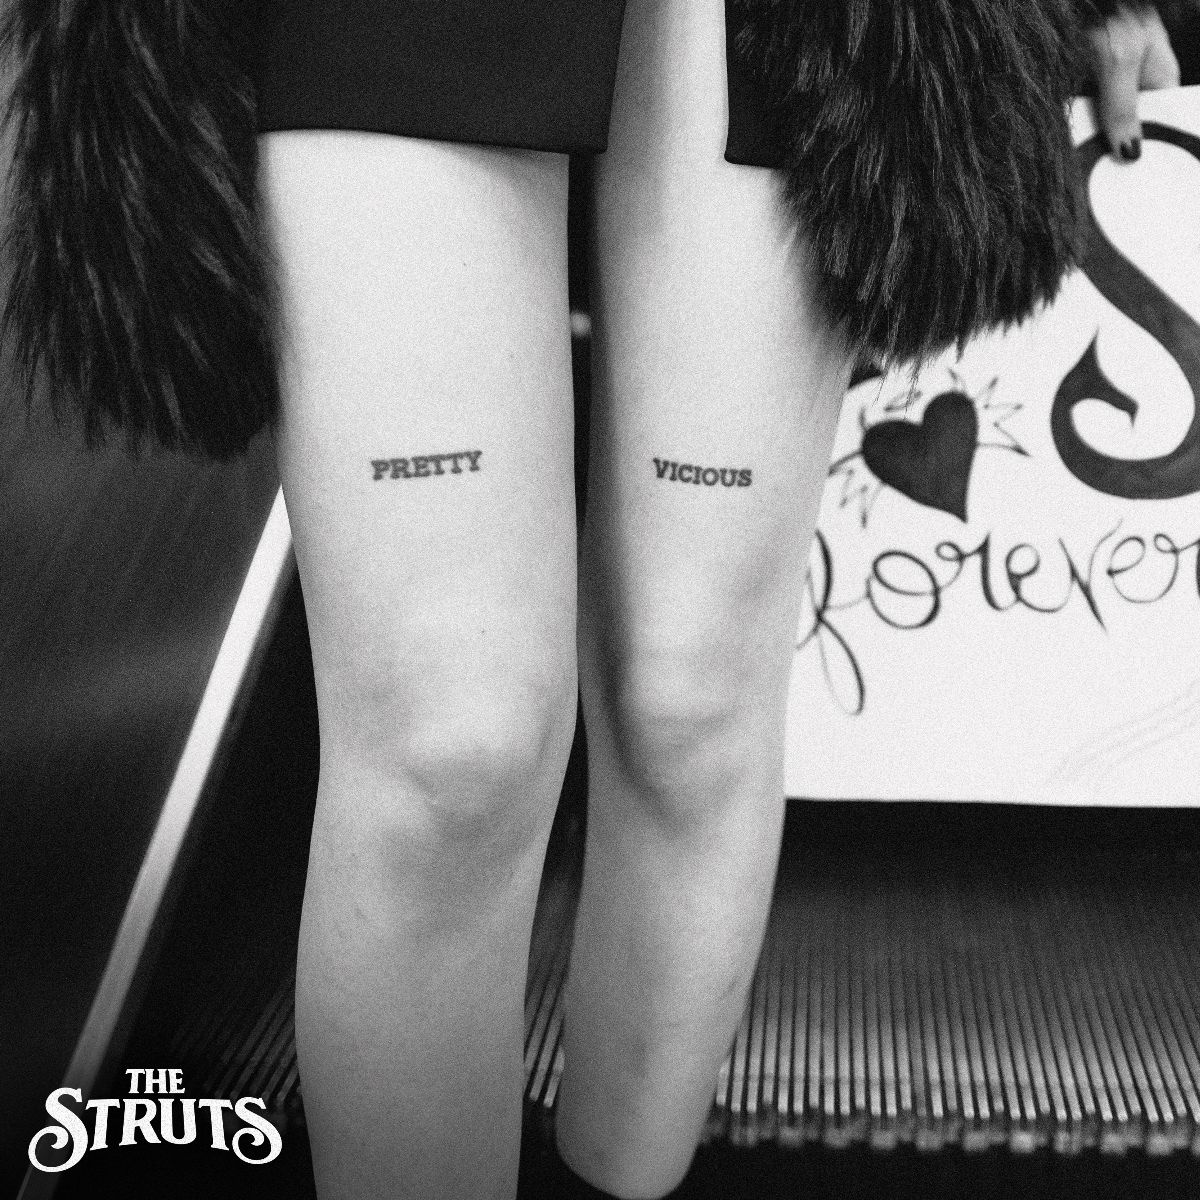 The Struts release new single 'Pretty Vicious'